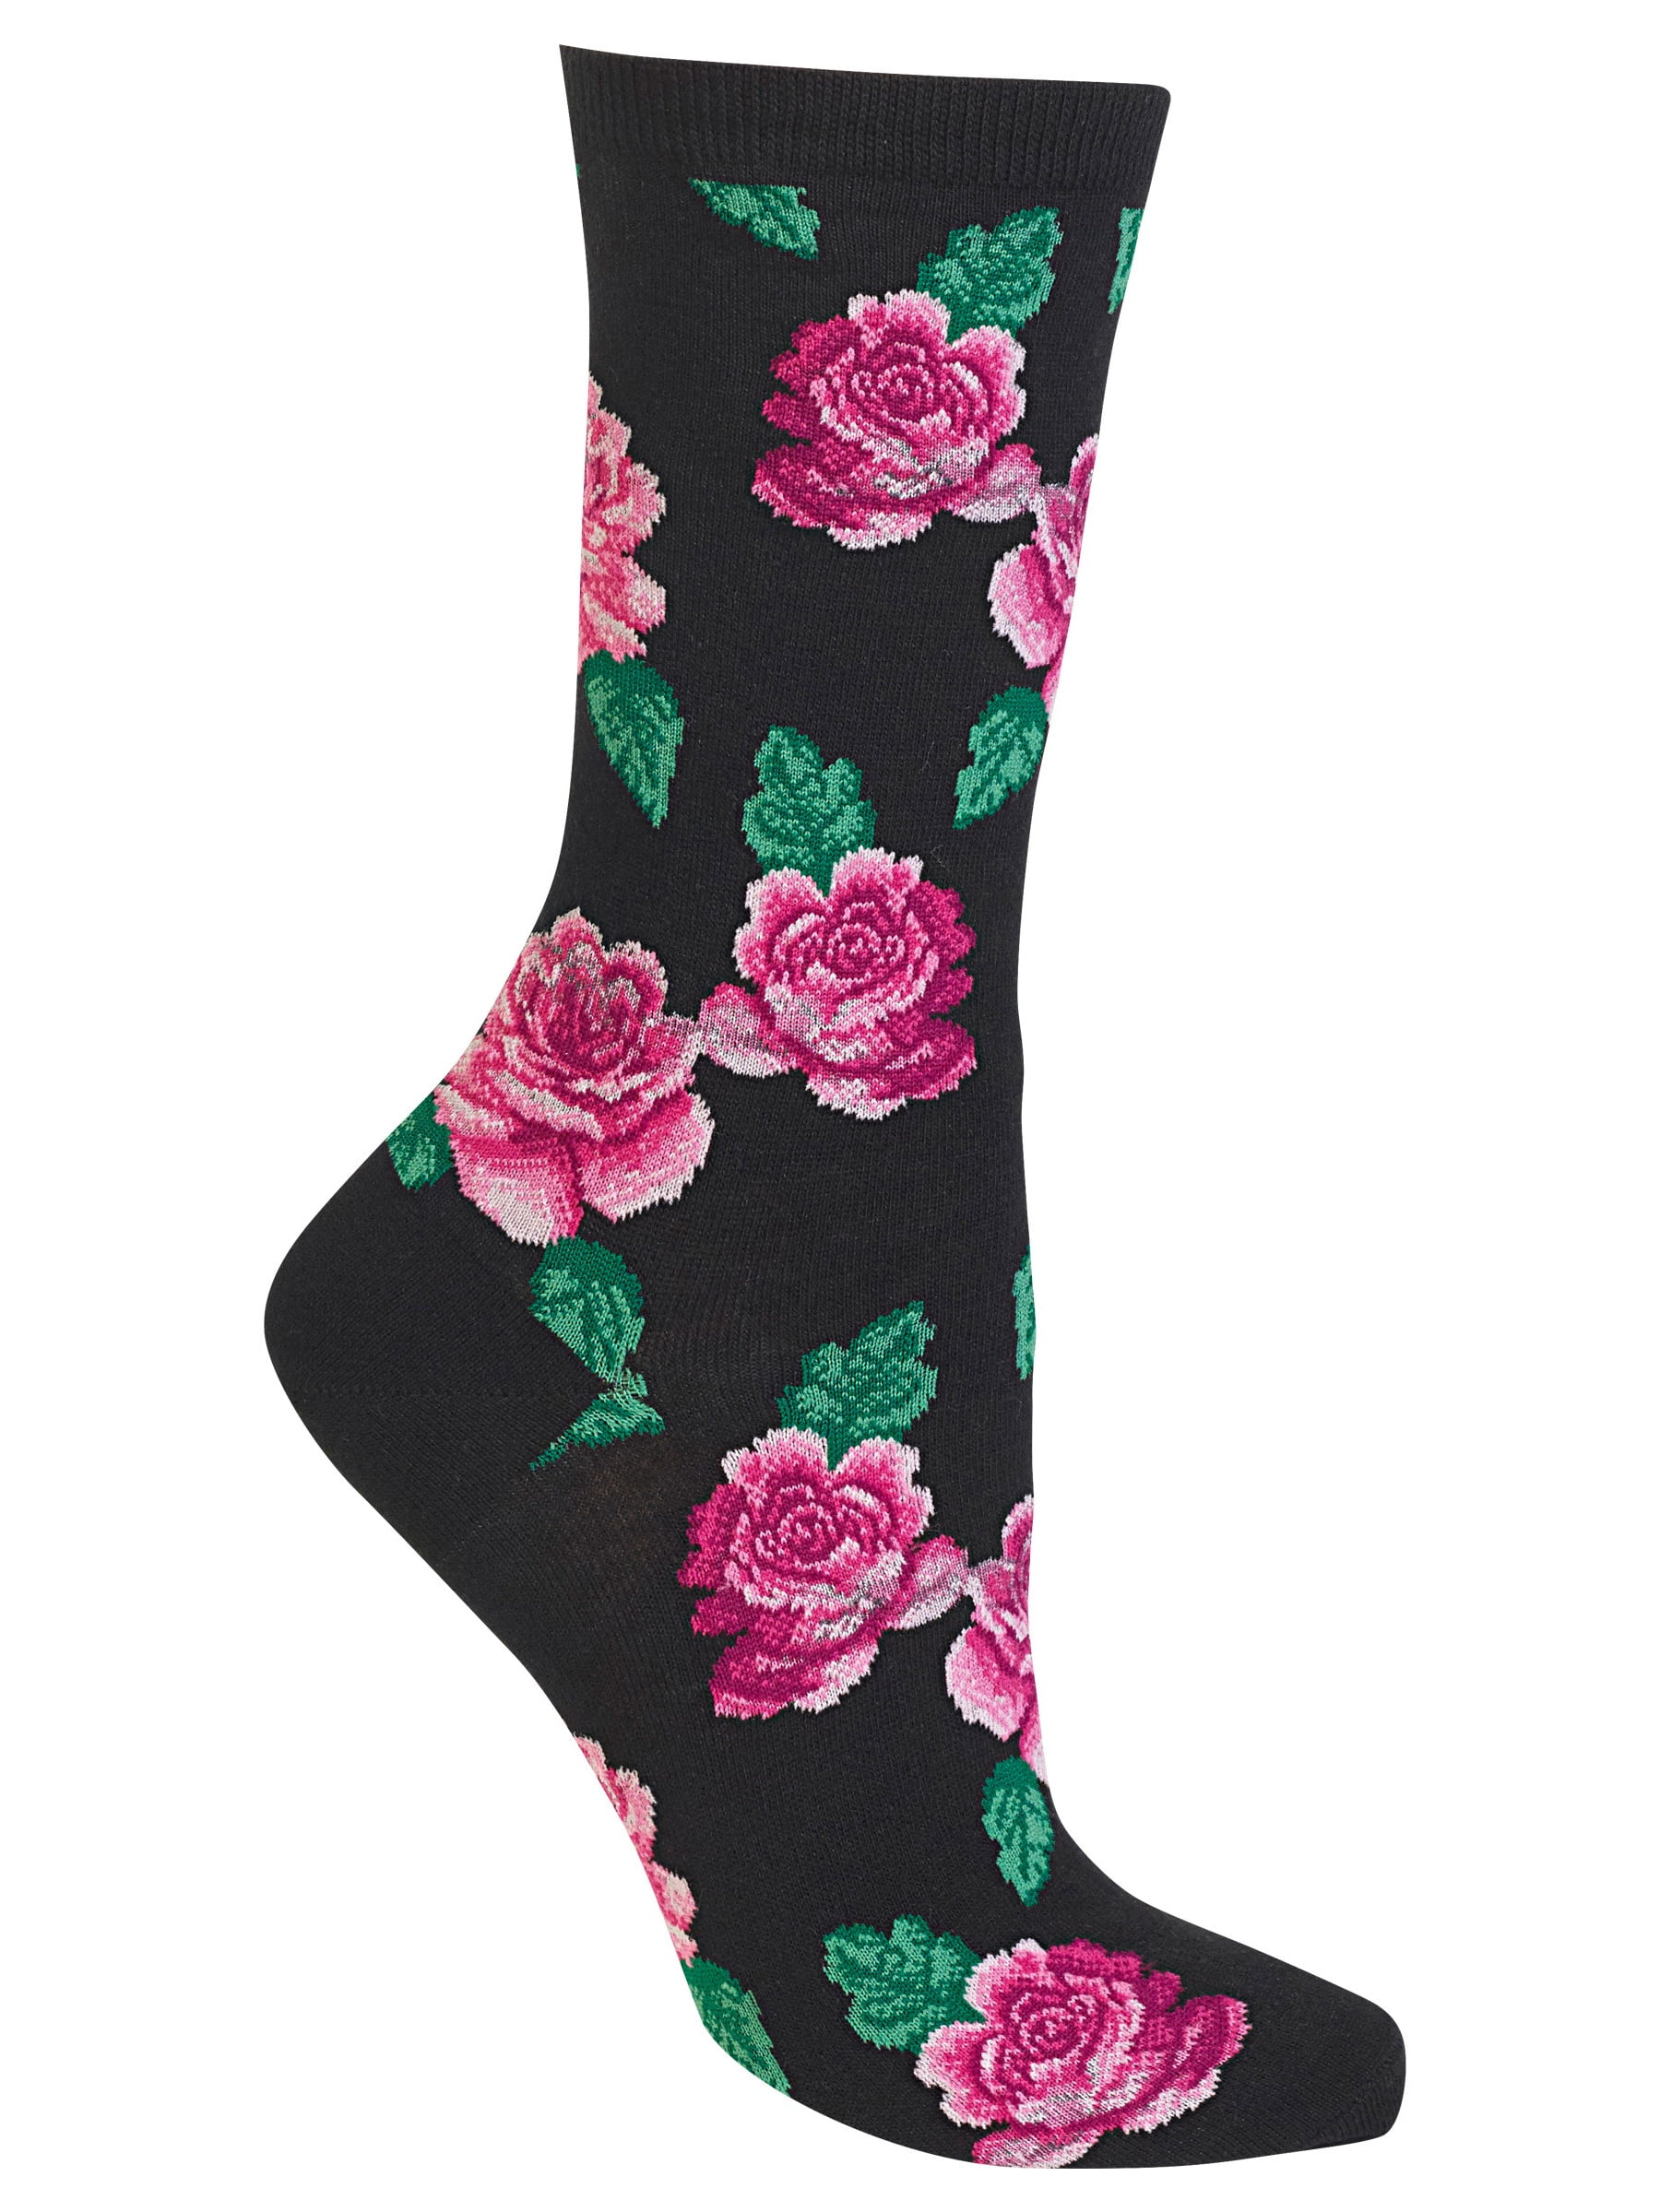 Rose socks